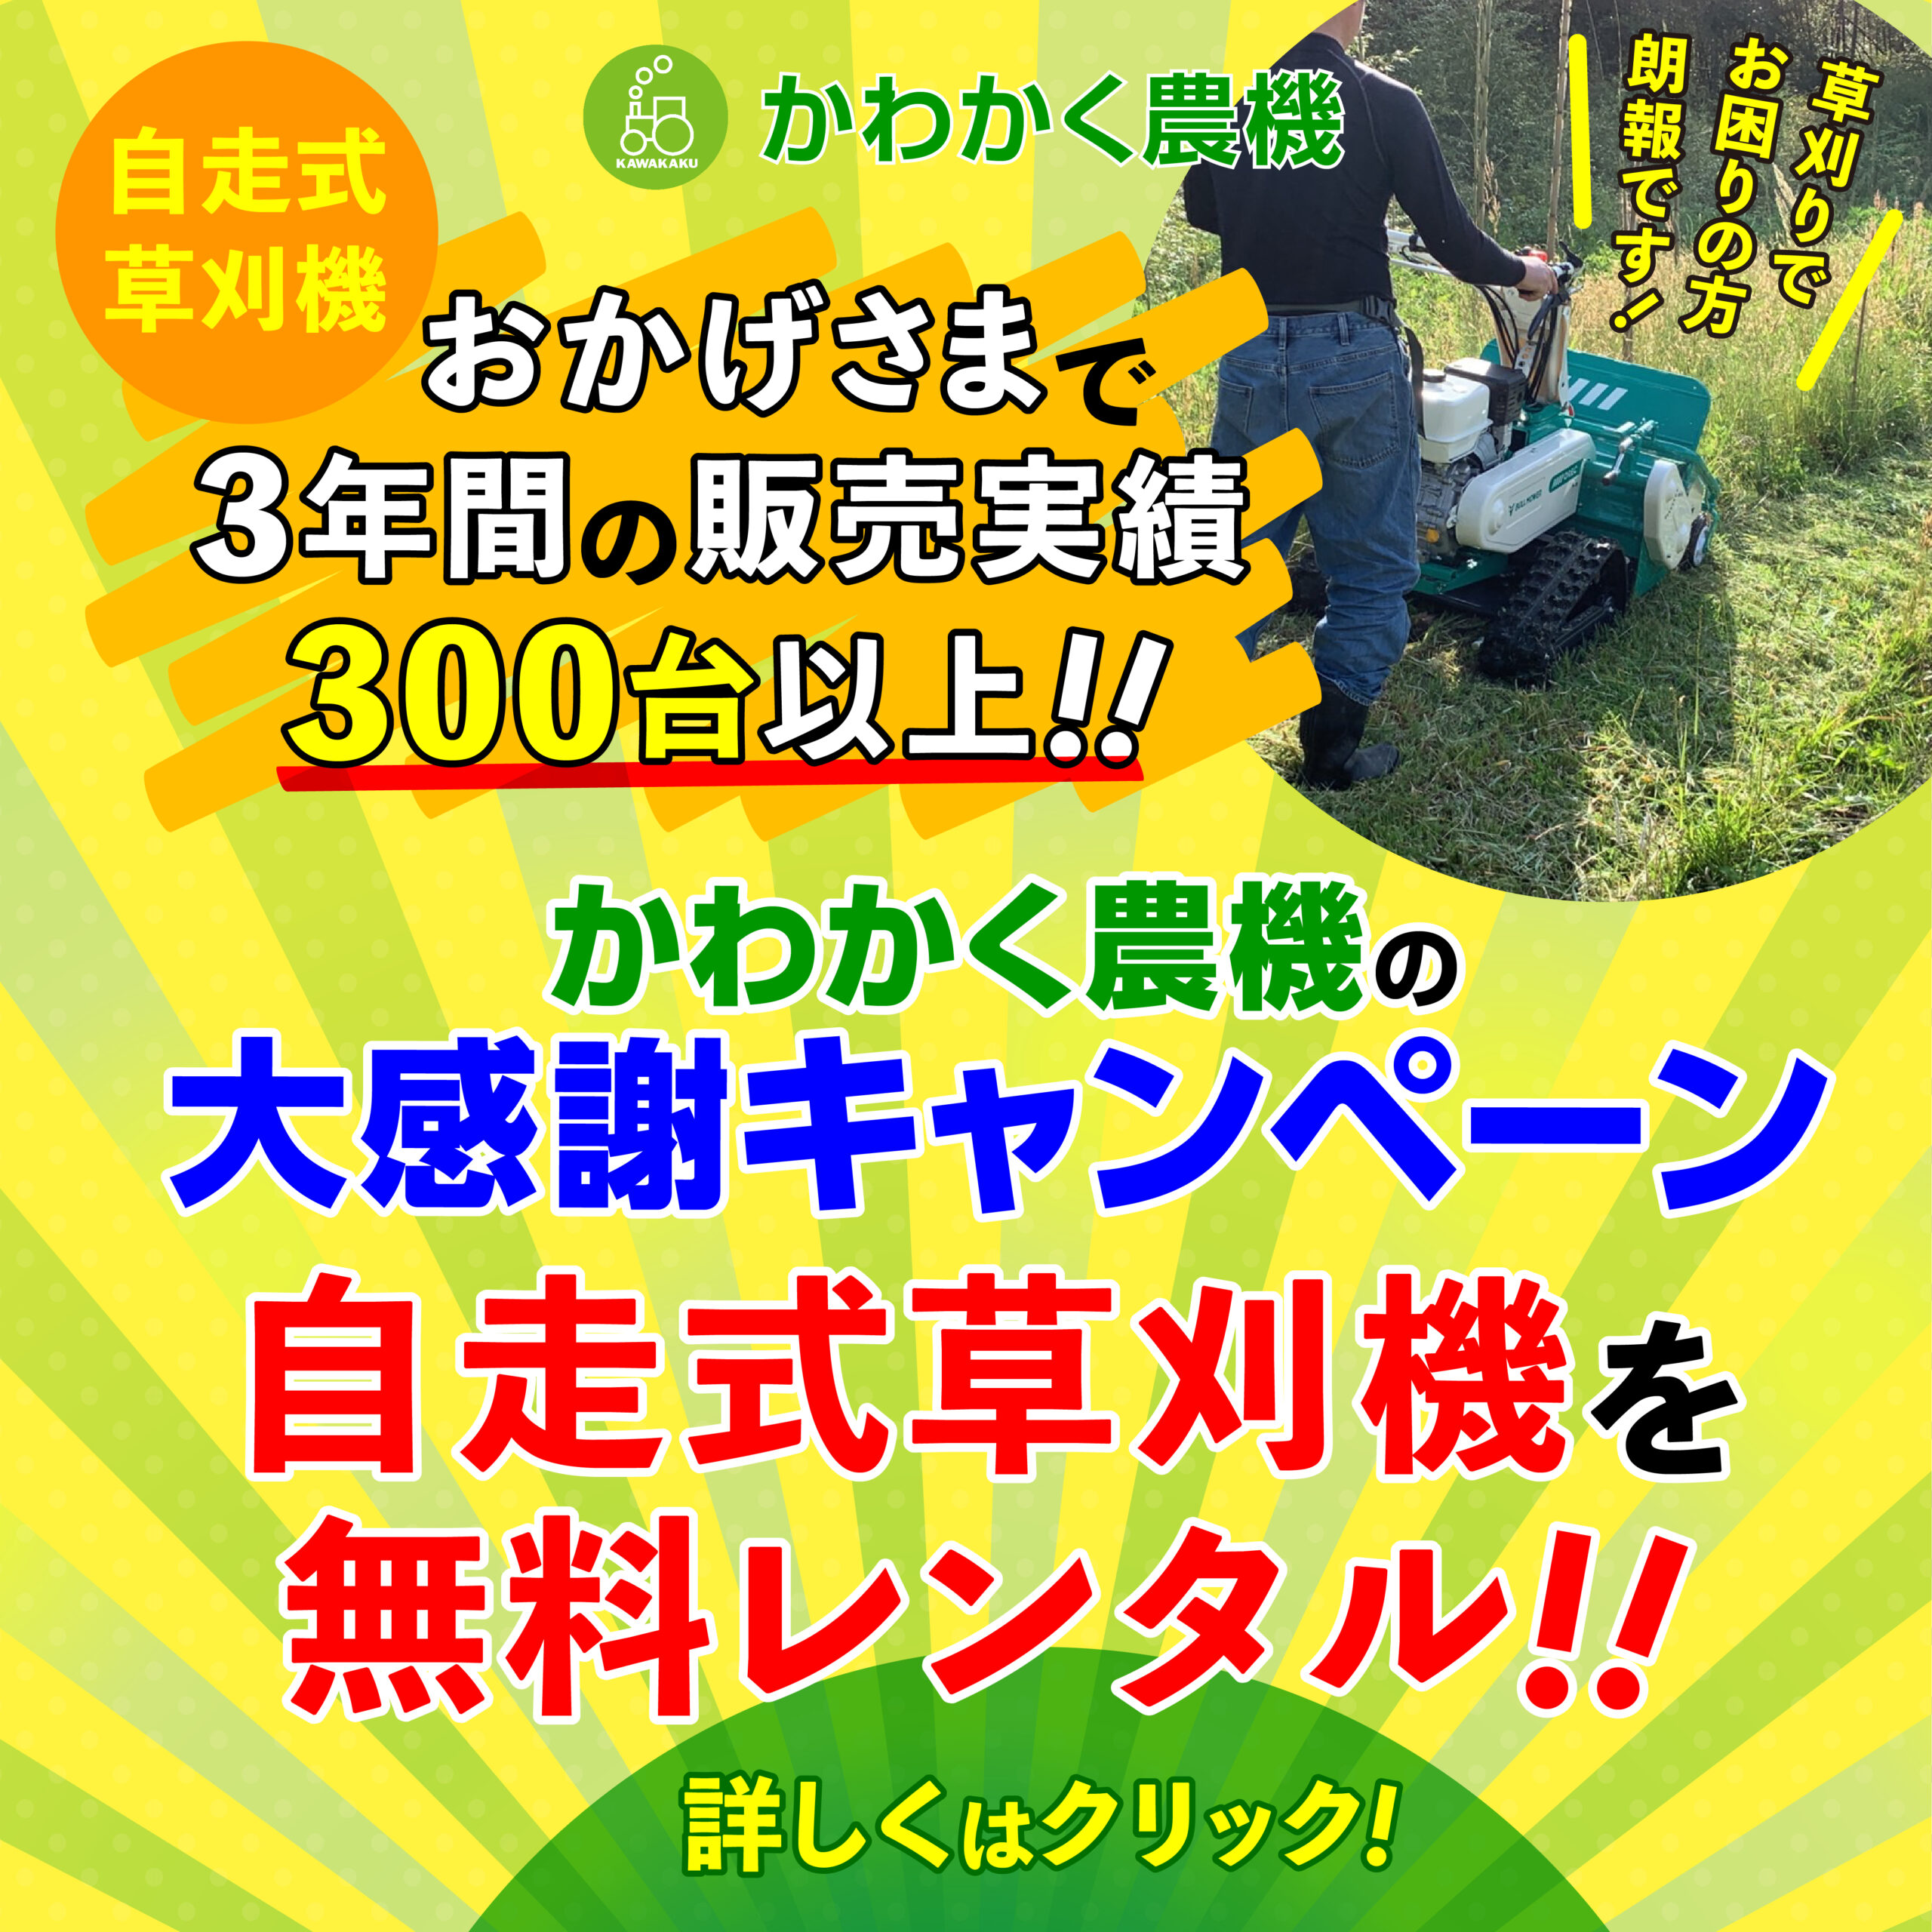 2022年9月 自走式草刈機を無料レンタルキャンペーン!!